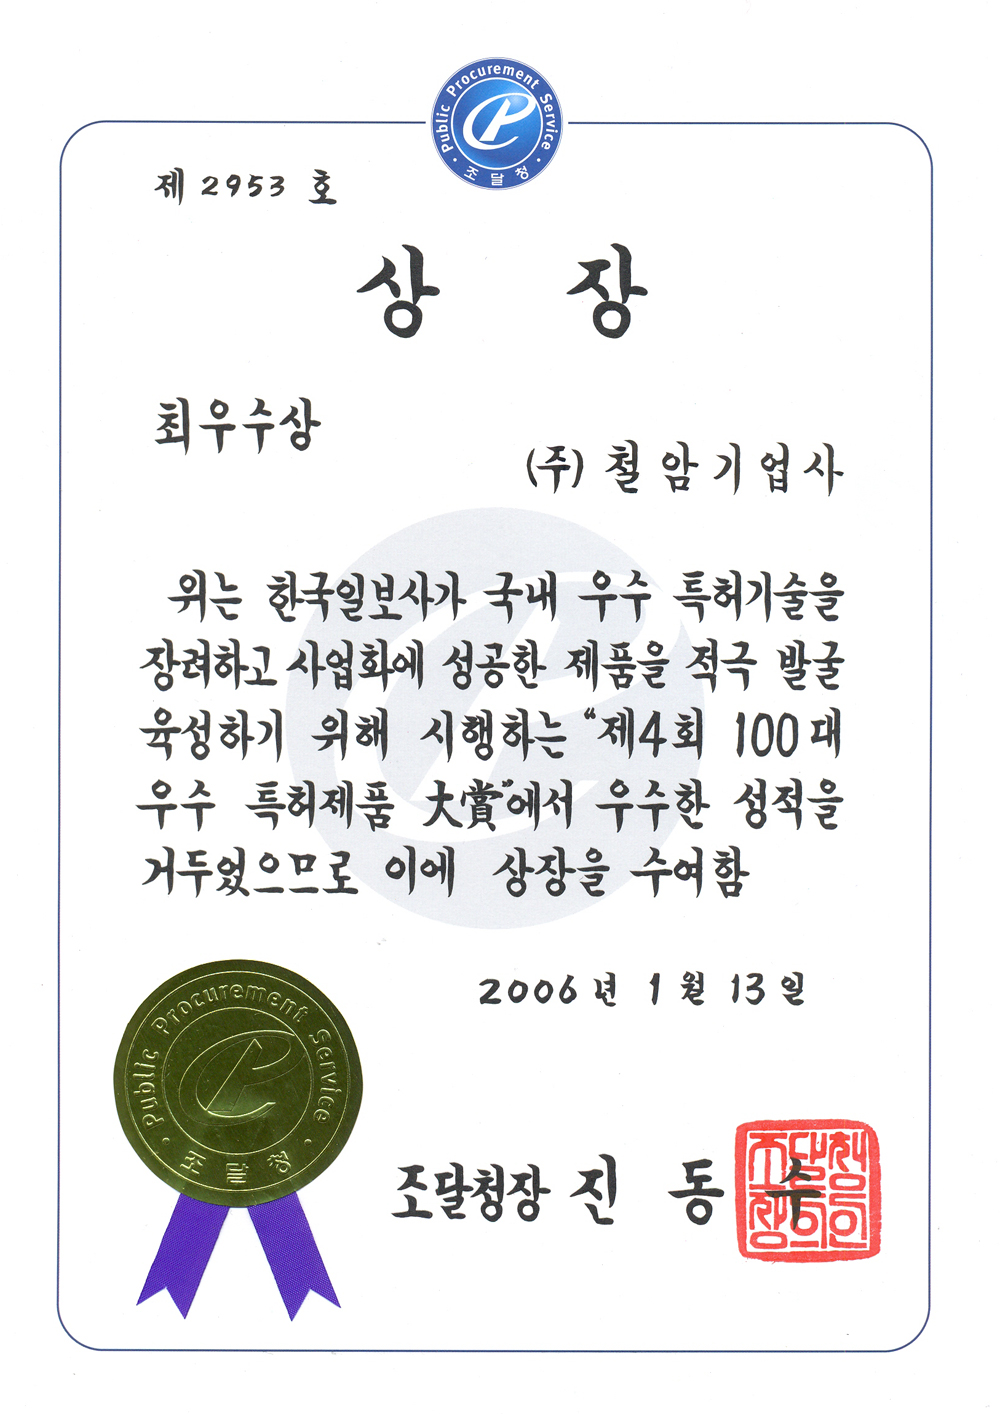 b--2005-100대-우수특허제품-최우수-조달청장_001